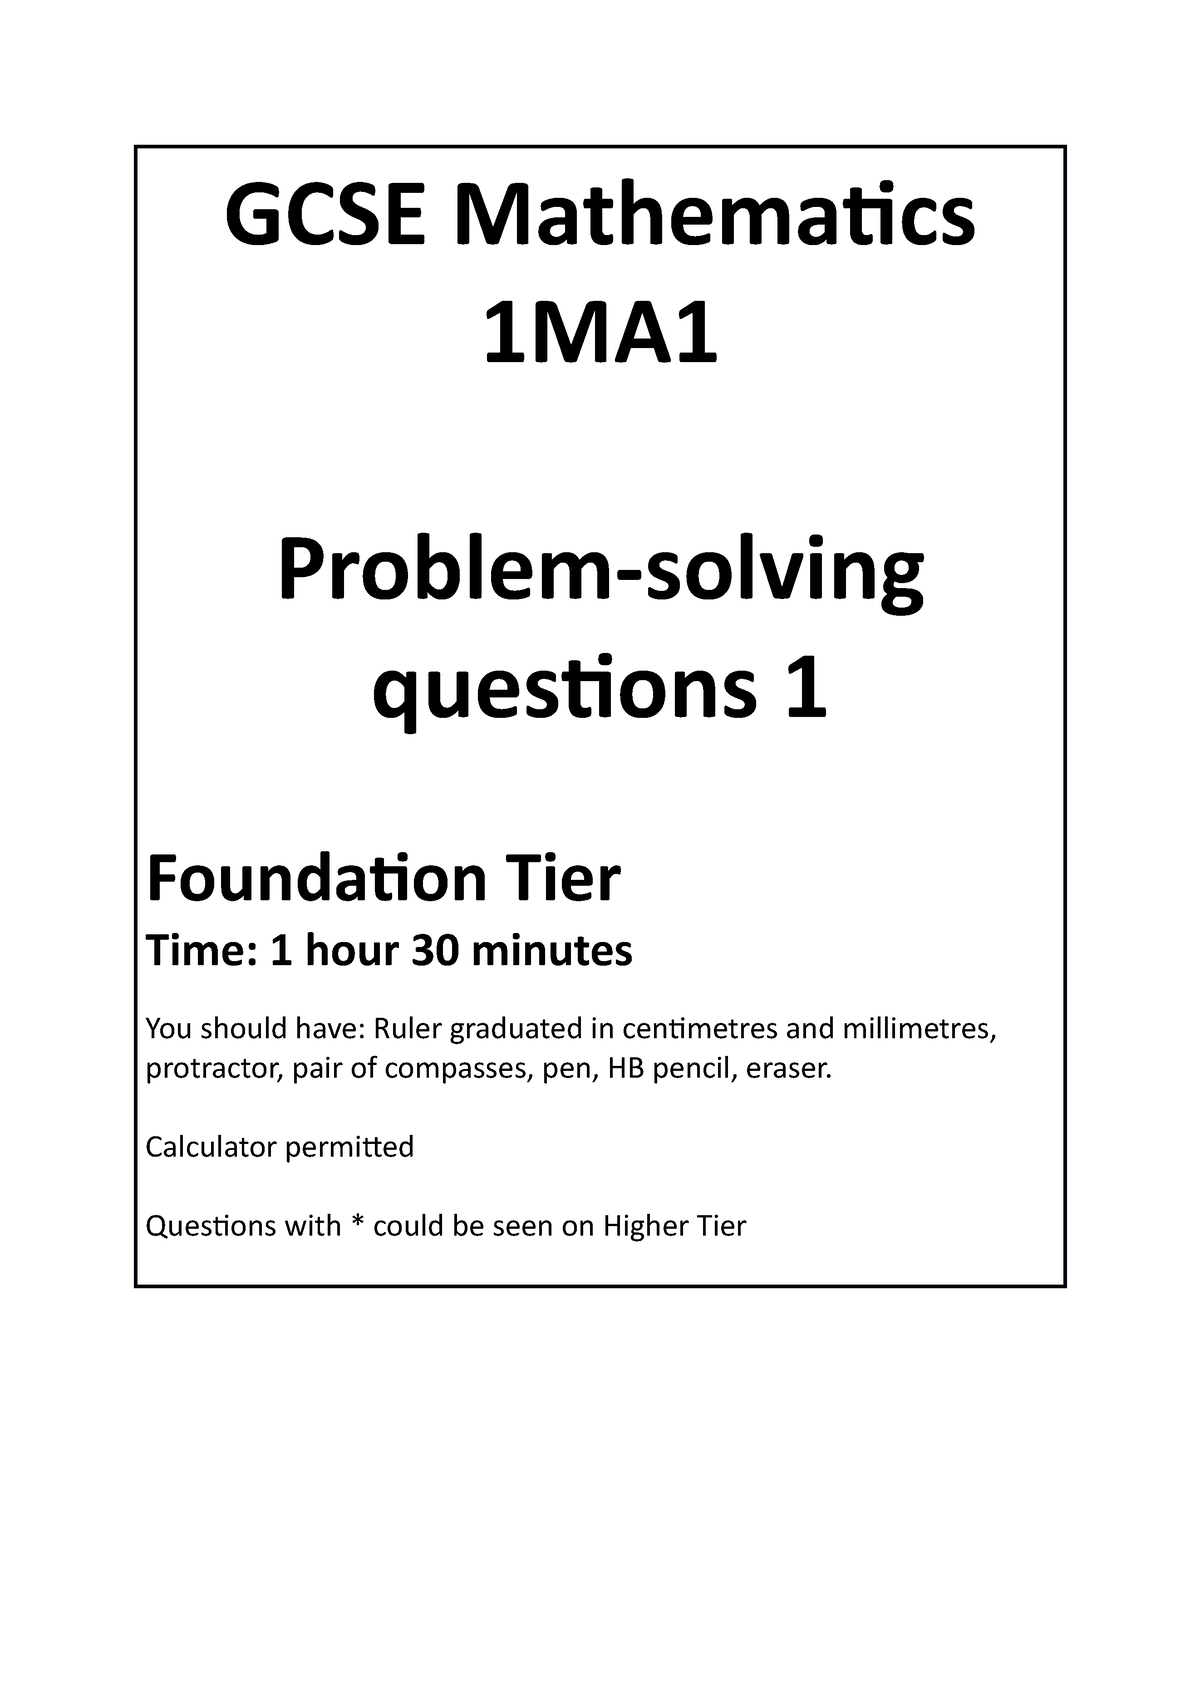 problem solving questions gcse foundation